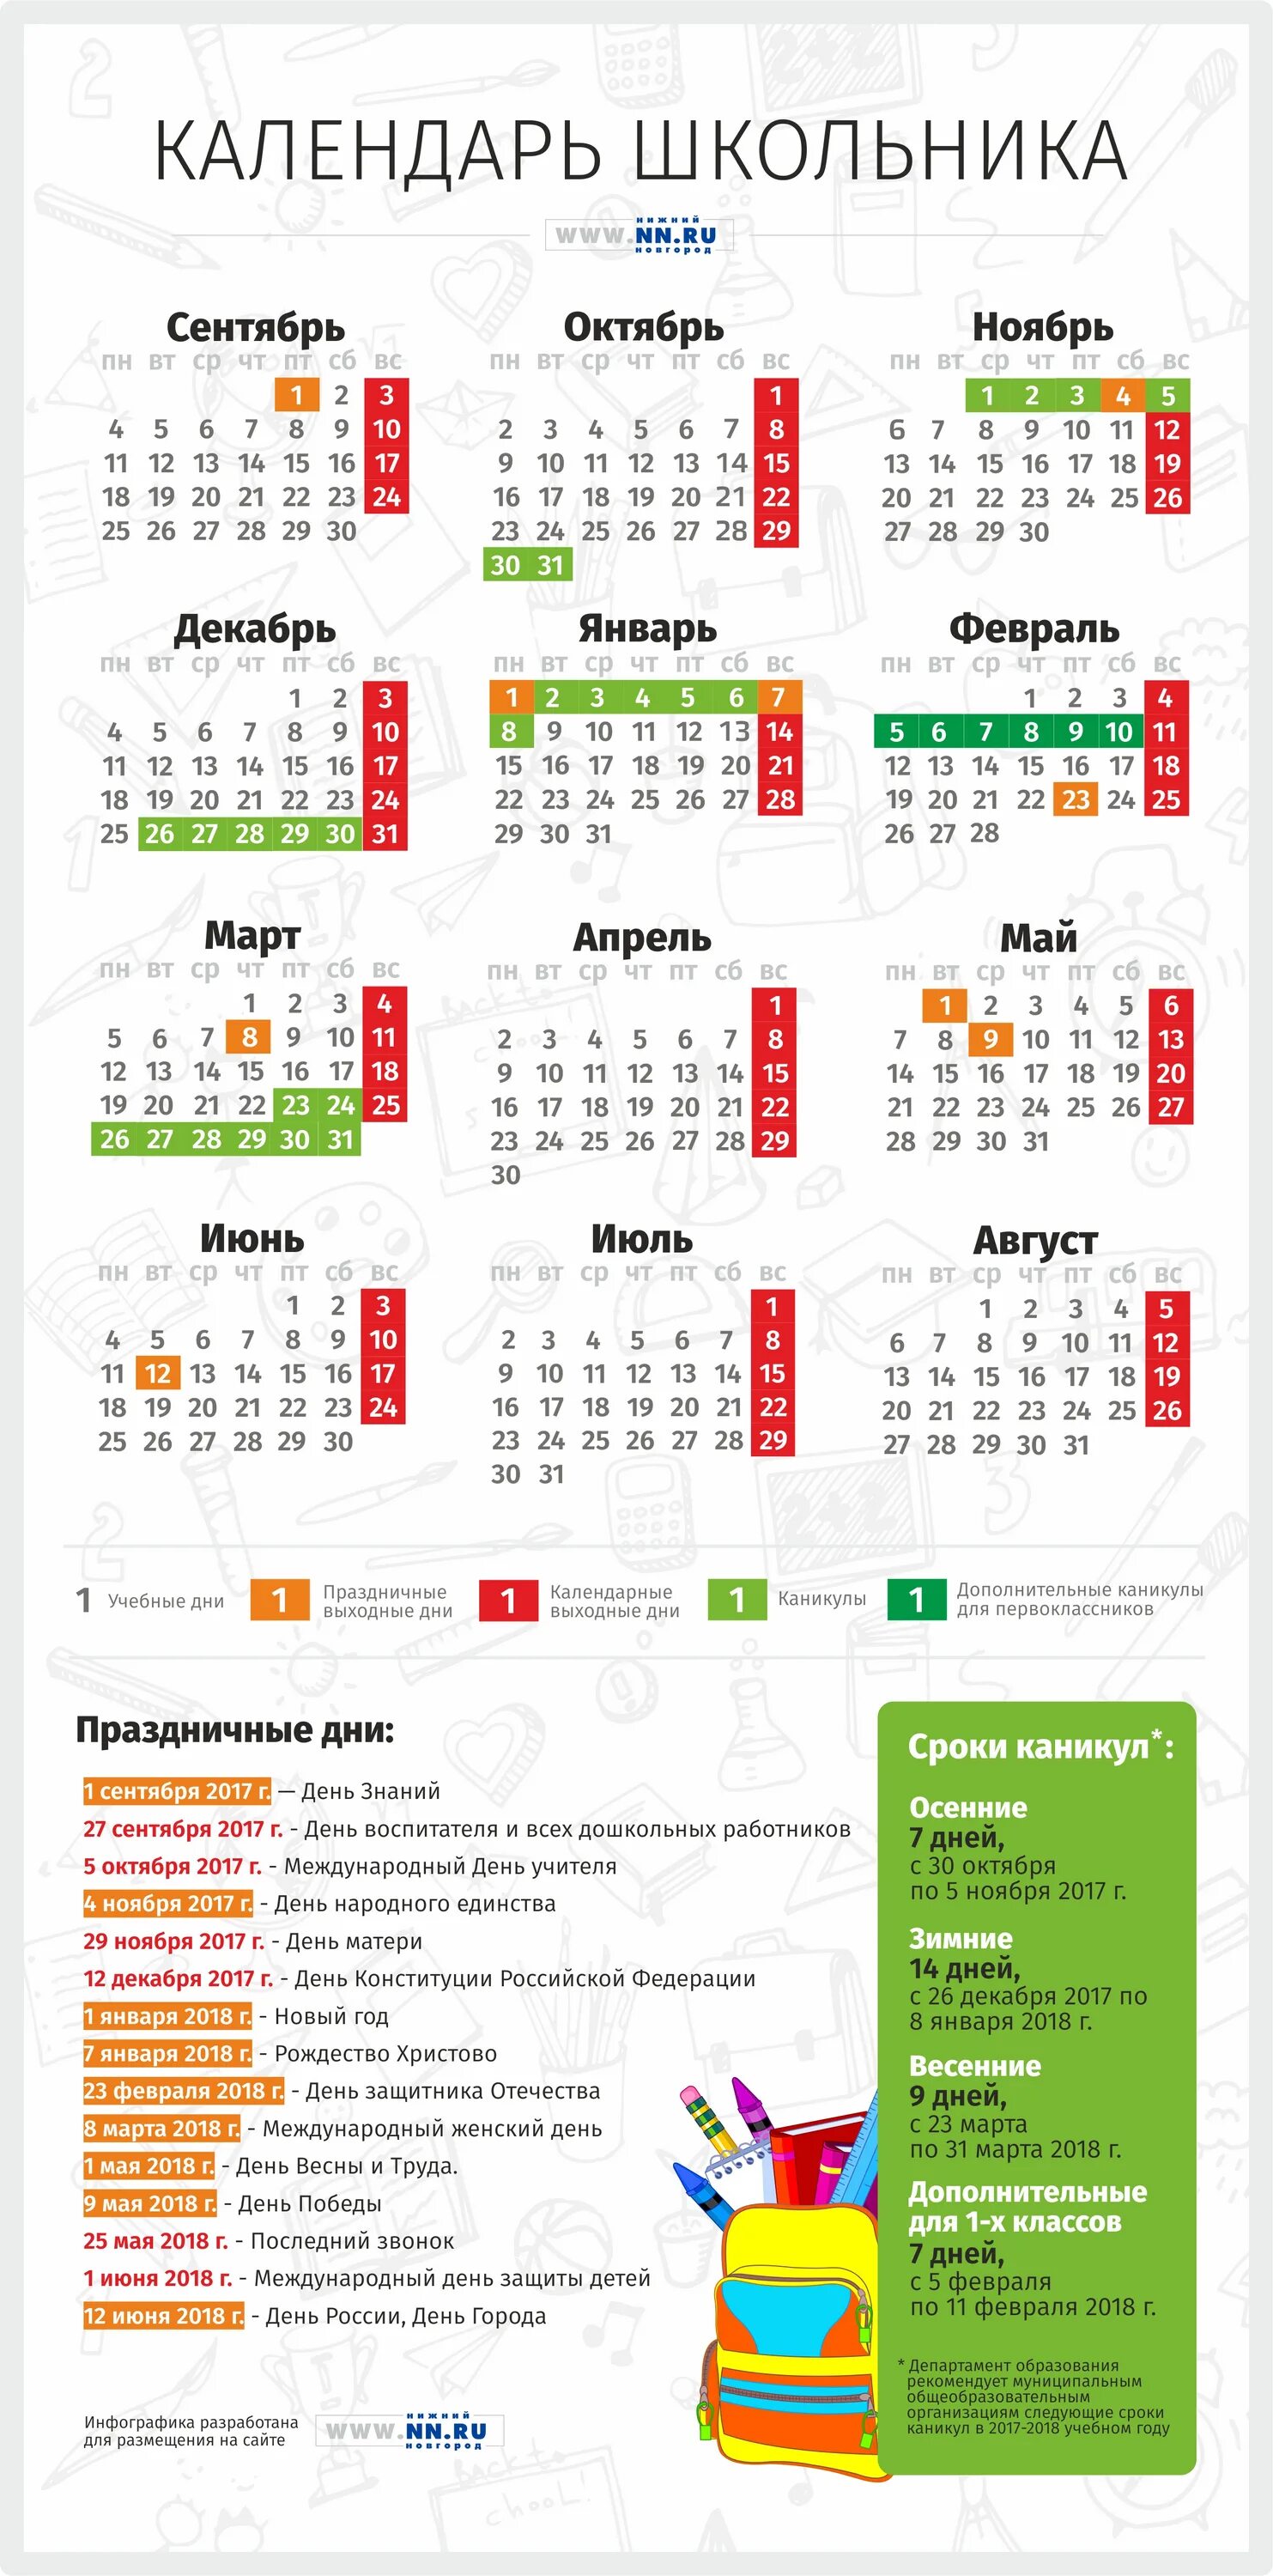 Праздничные дни в мае в башкирии. Календарь школьника. Каникулы у школьников в Башкирии. Весенние каникулы в Башкирии. Календарь школьных праздников.